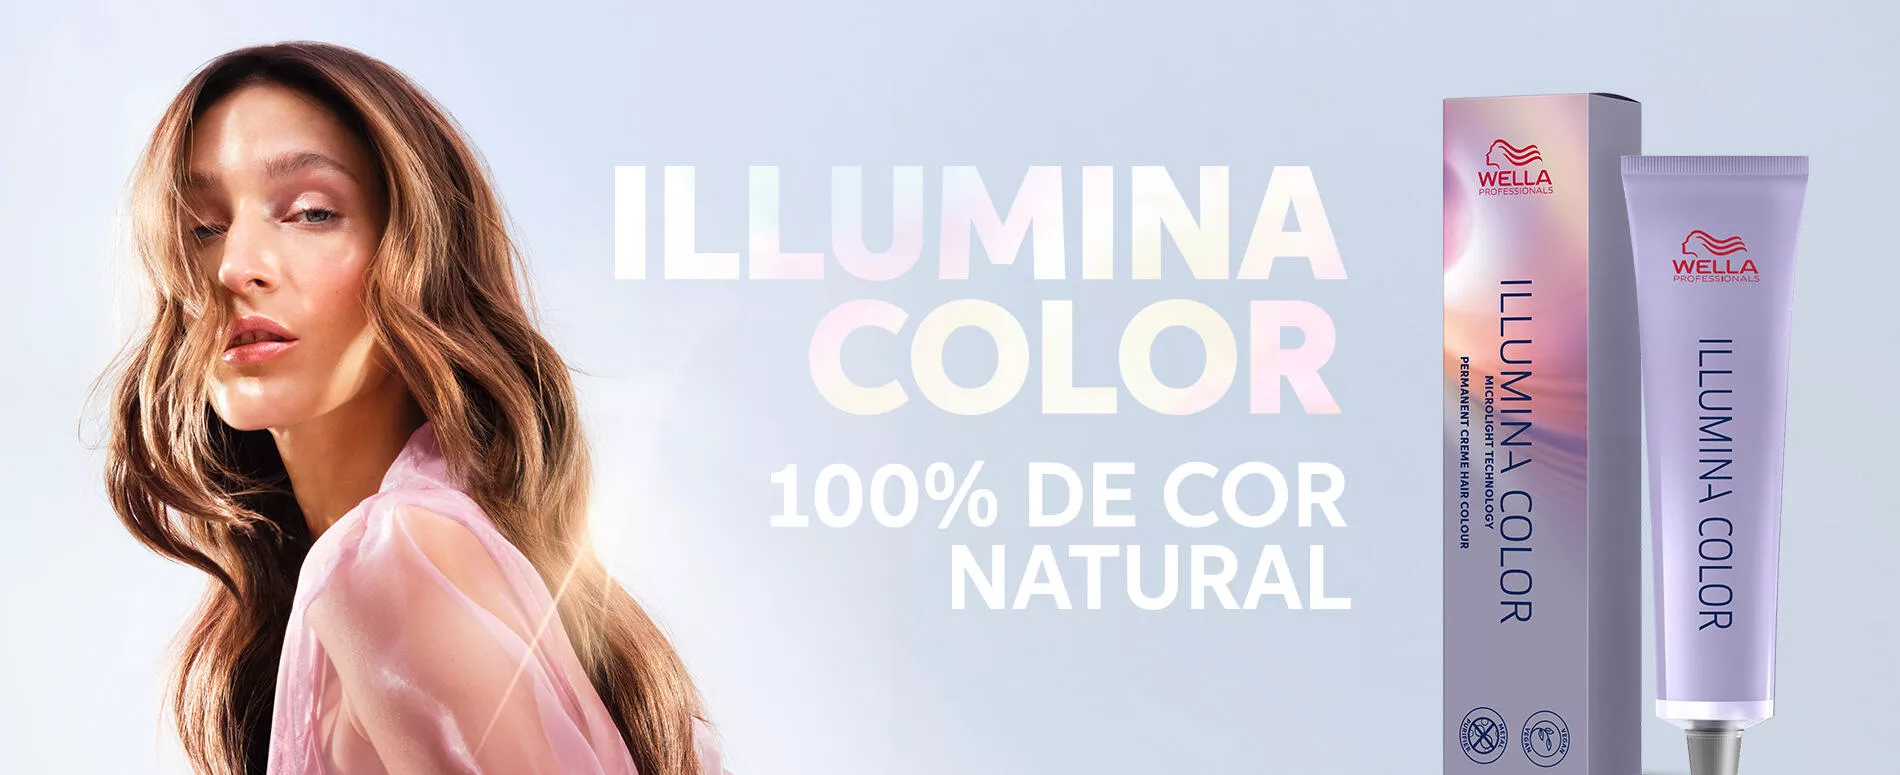 Uma modelo com cabelo castanho claro ondulado ao lado de imagens do produto para o cabelo 100% natural Illumina Color da Wella Professionals